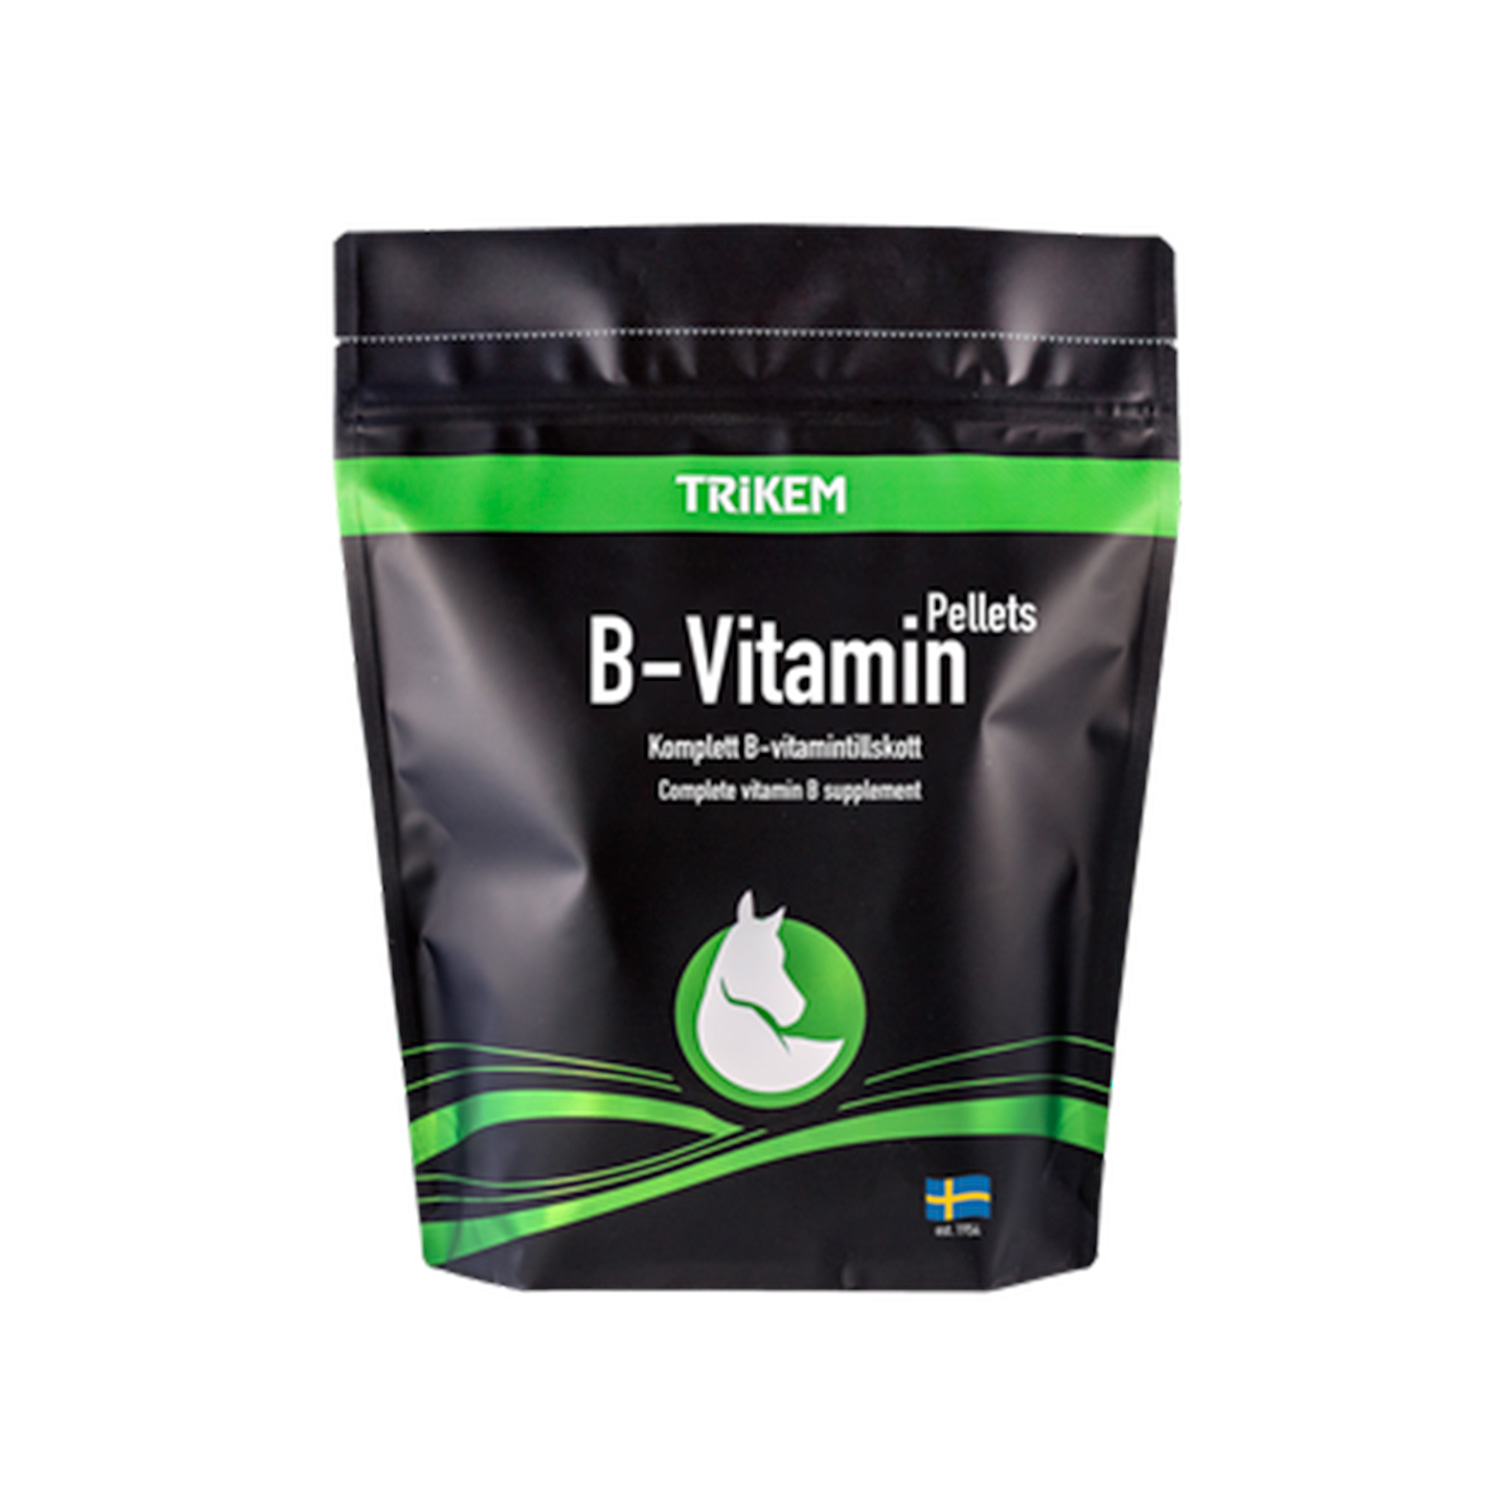 Vimital b-vitamin pellets 1 kg